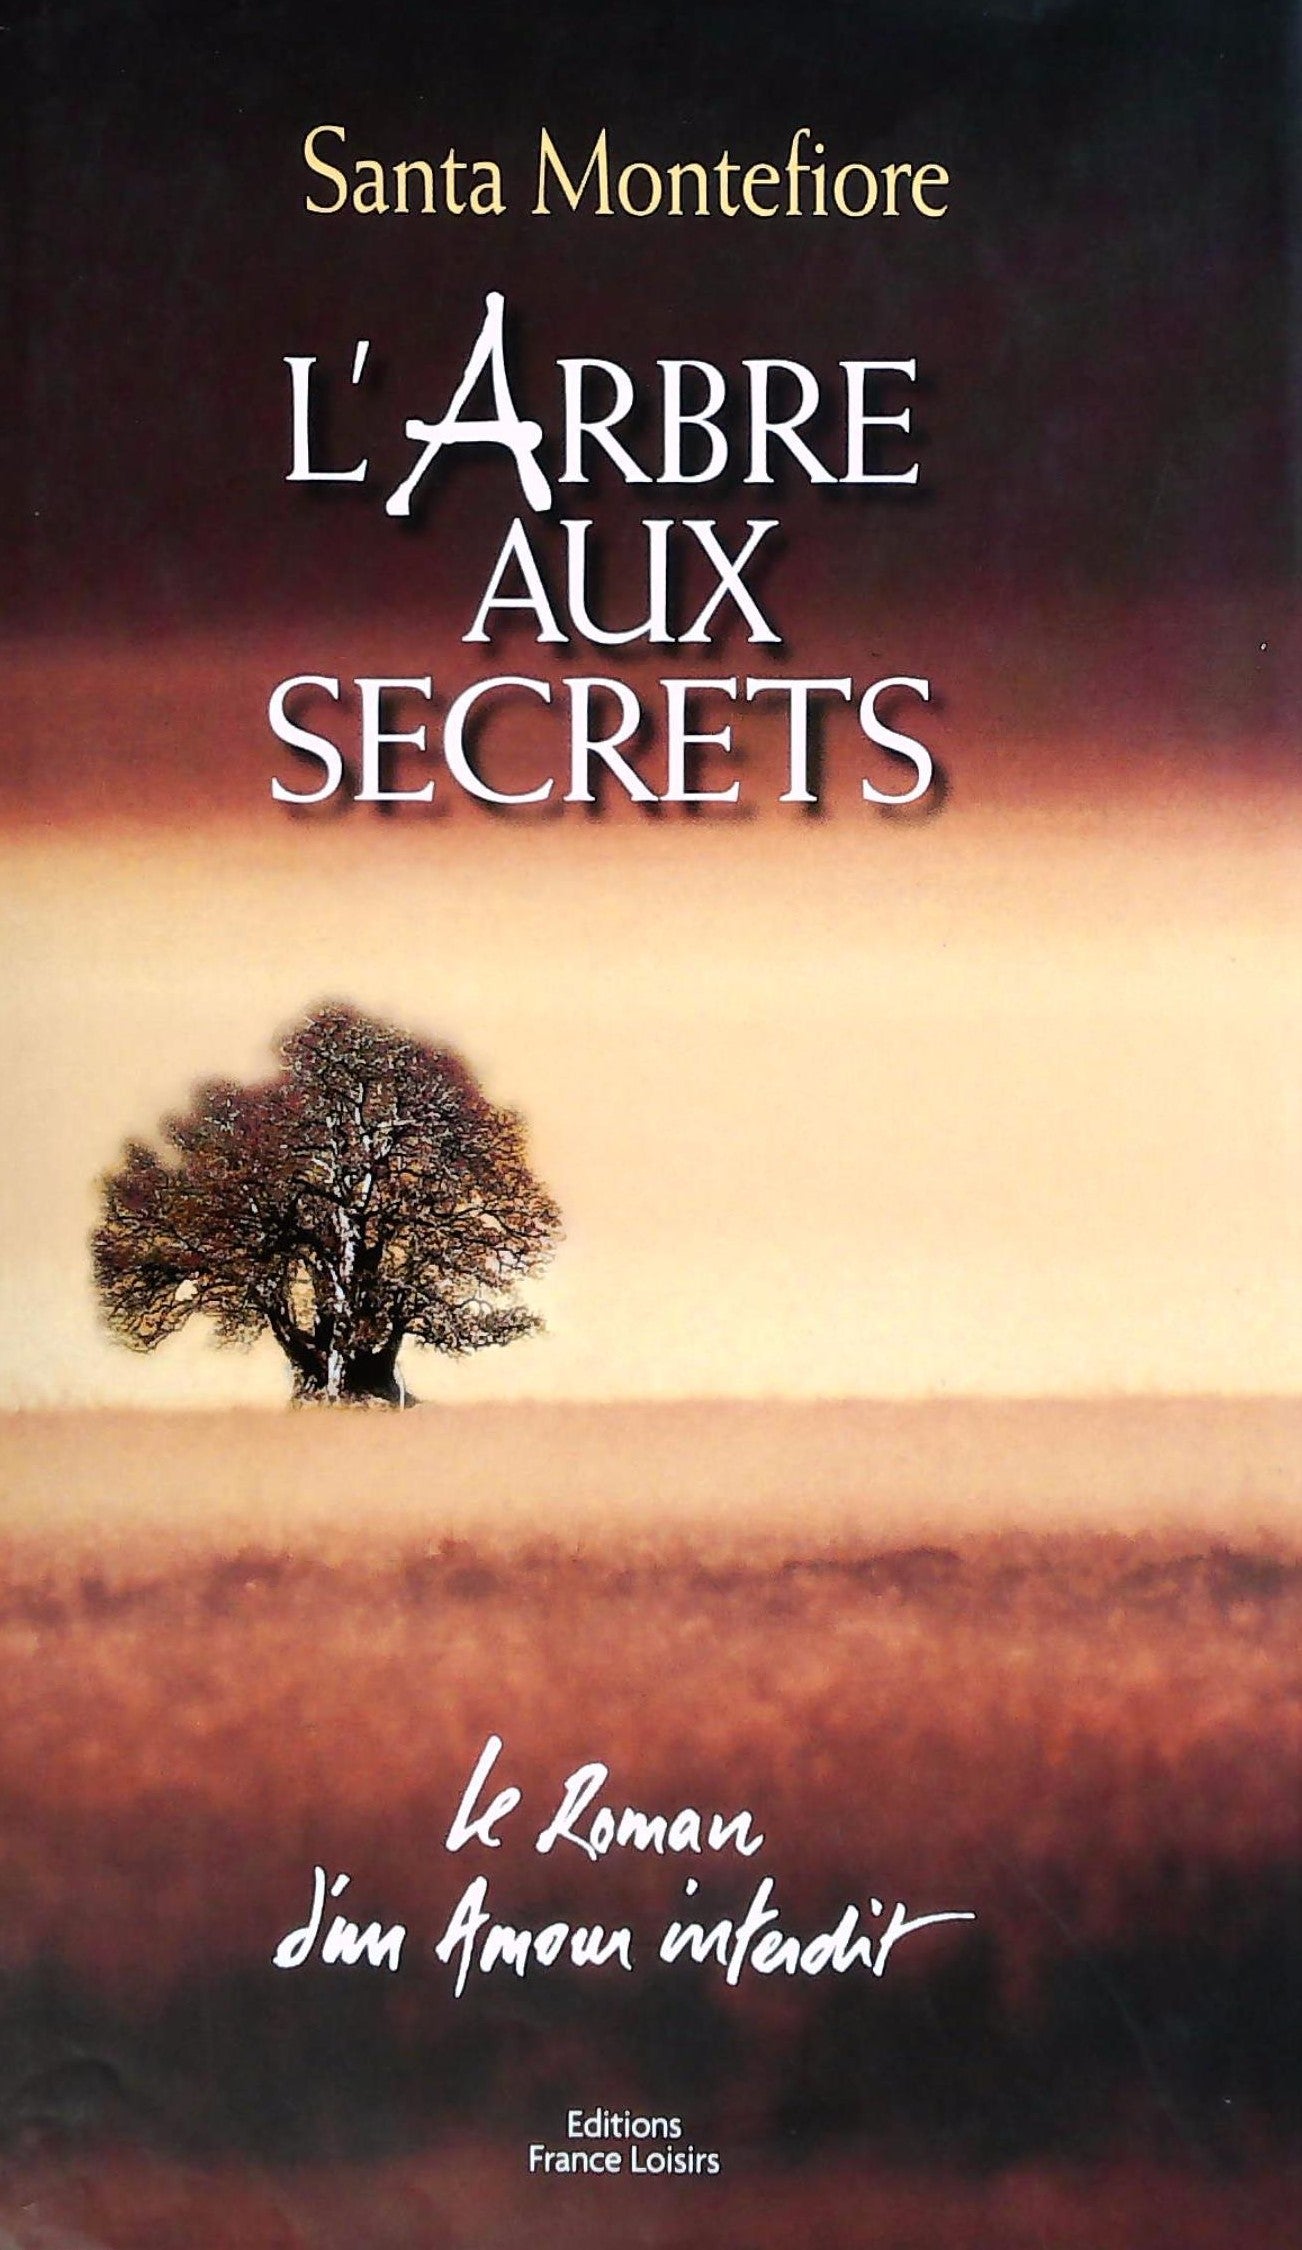 Livre ISBN 2744144002 L'arbre aux secrets : Le roman d'un amour interdit (Santa Montefiore)